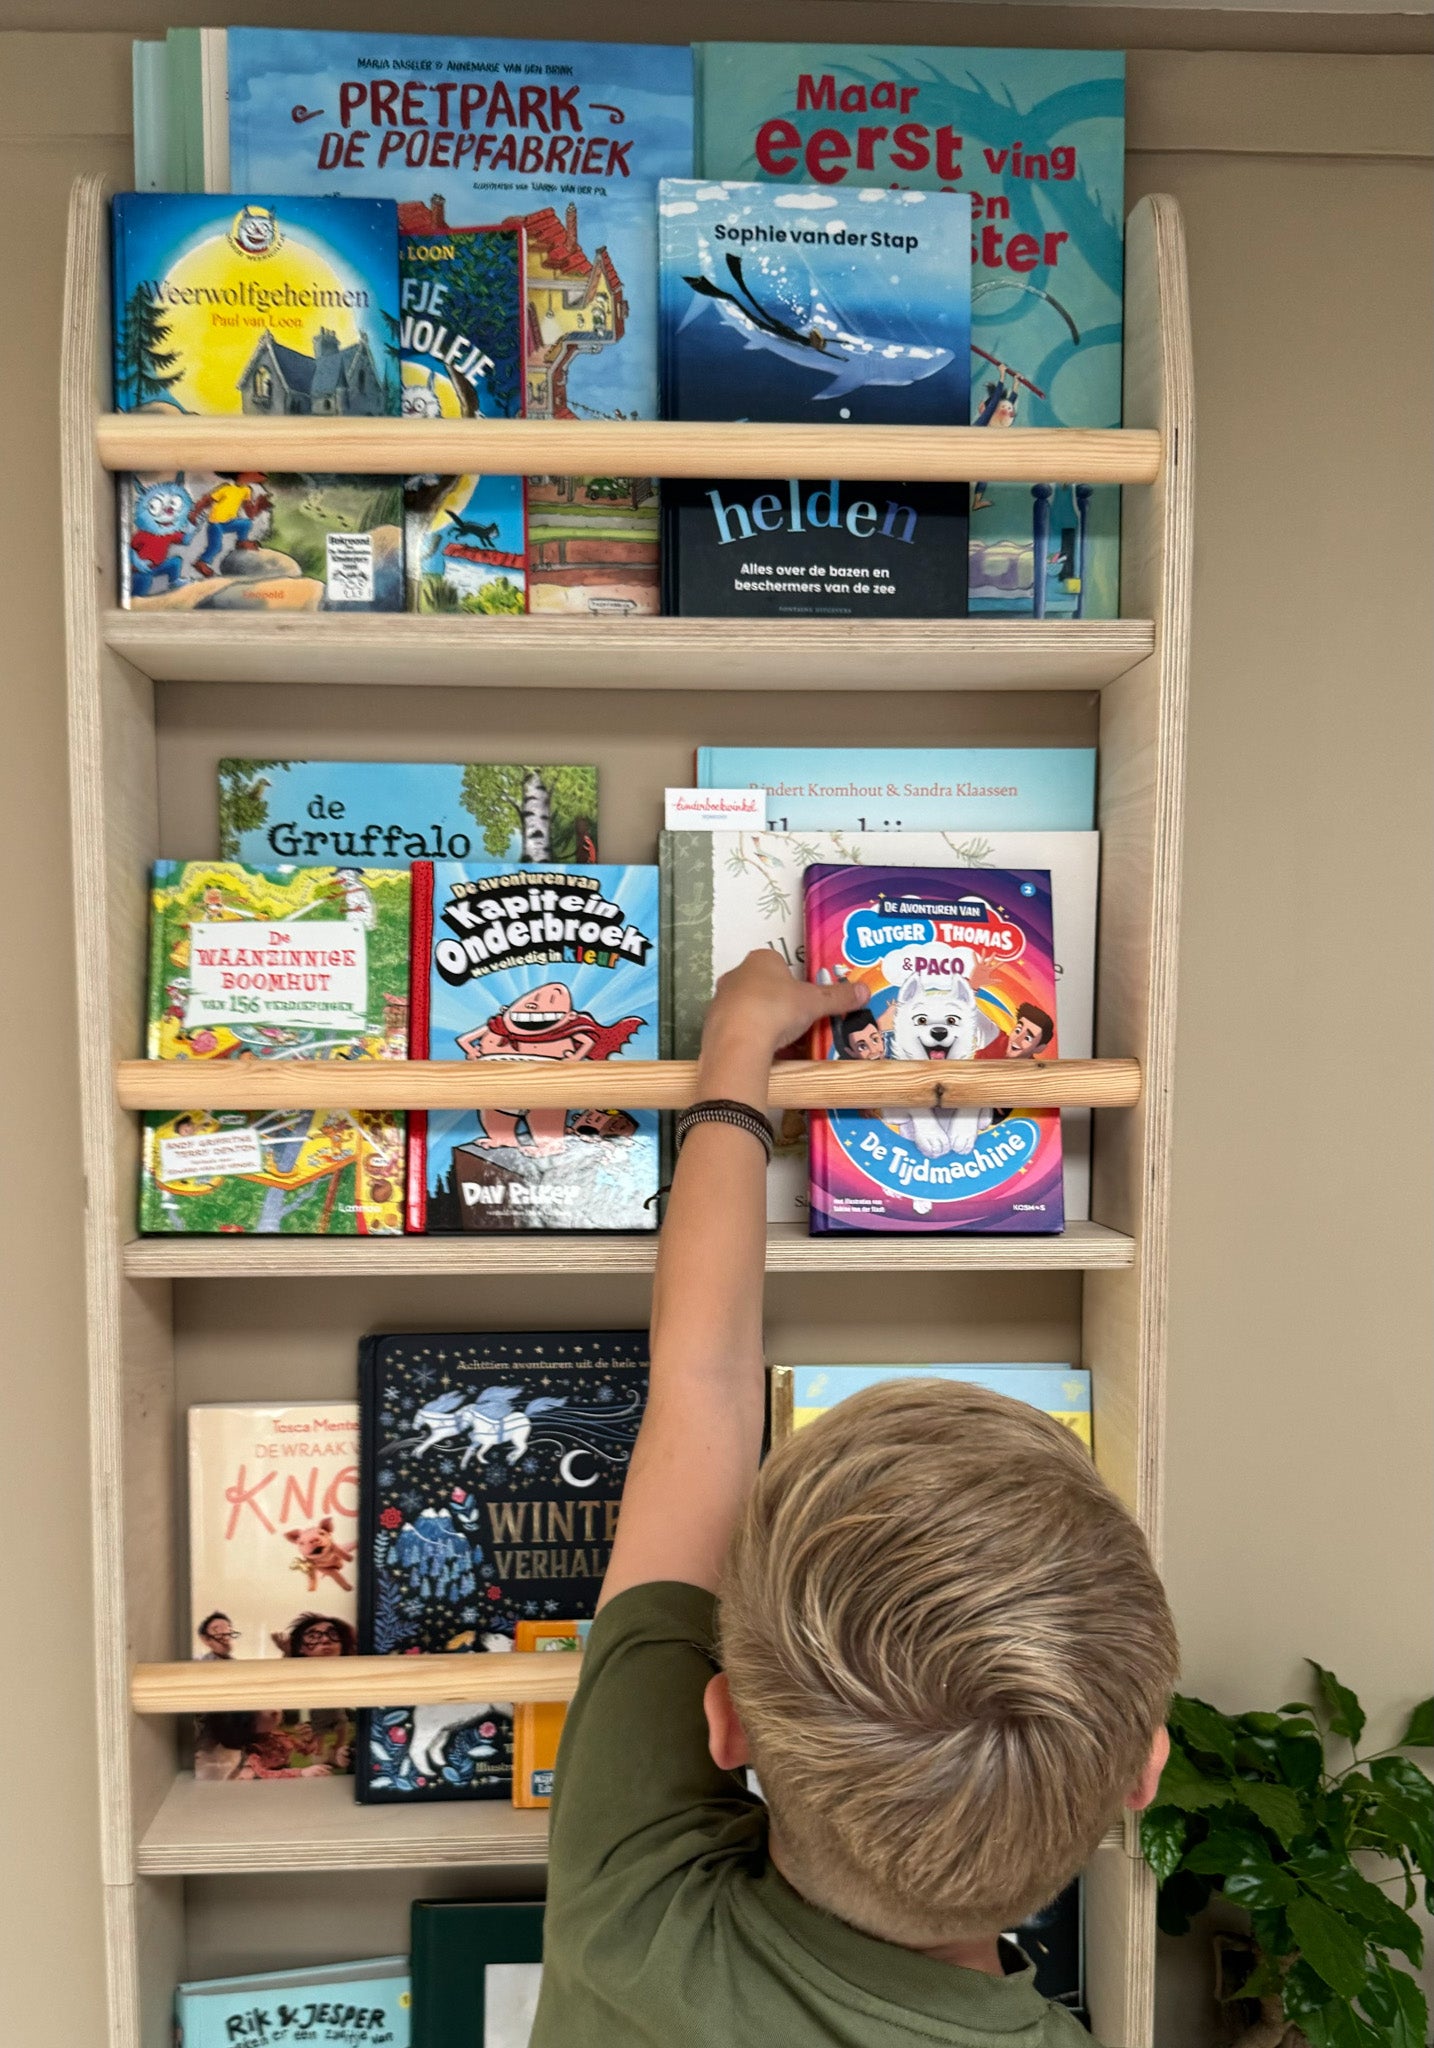 Montessori children's room bookshelf | 6 shelves - natural